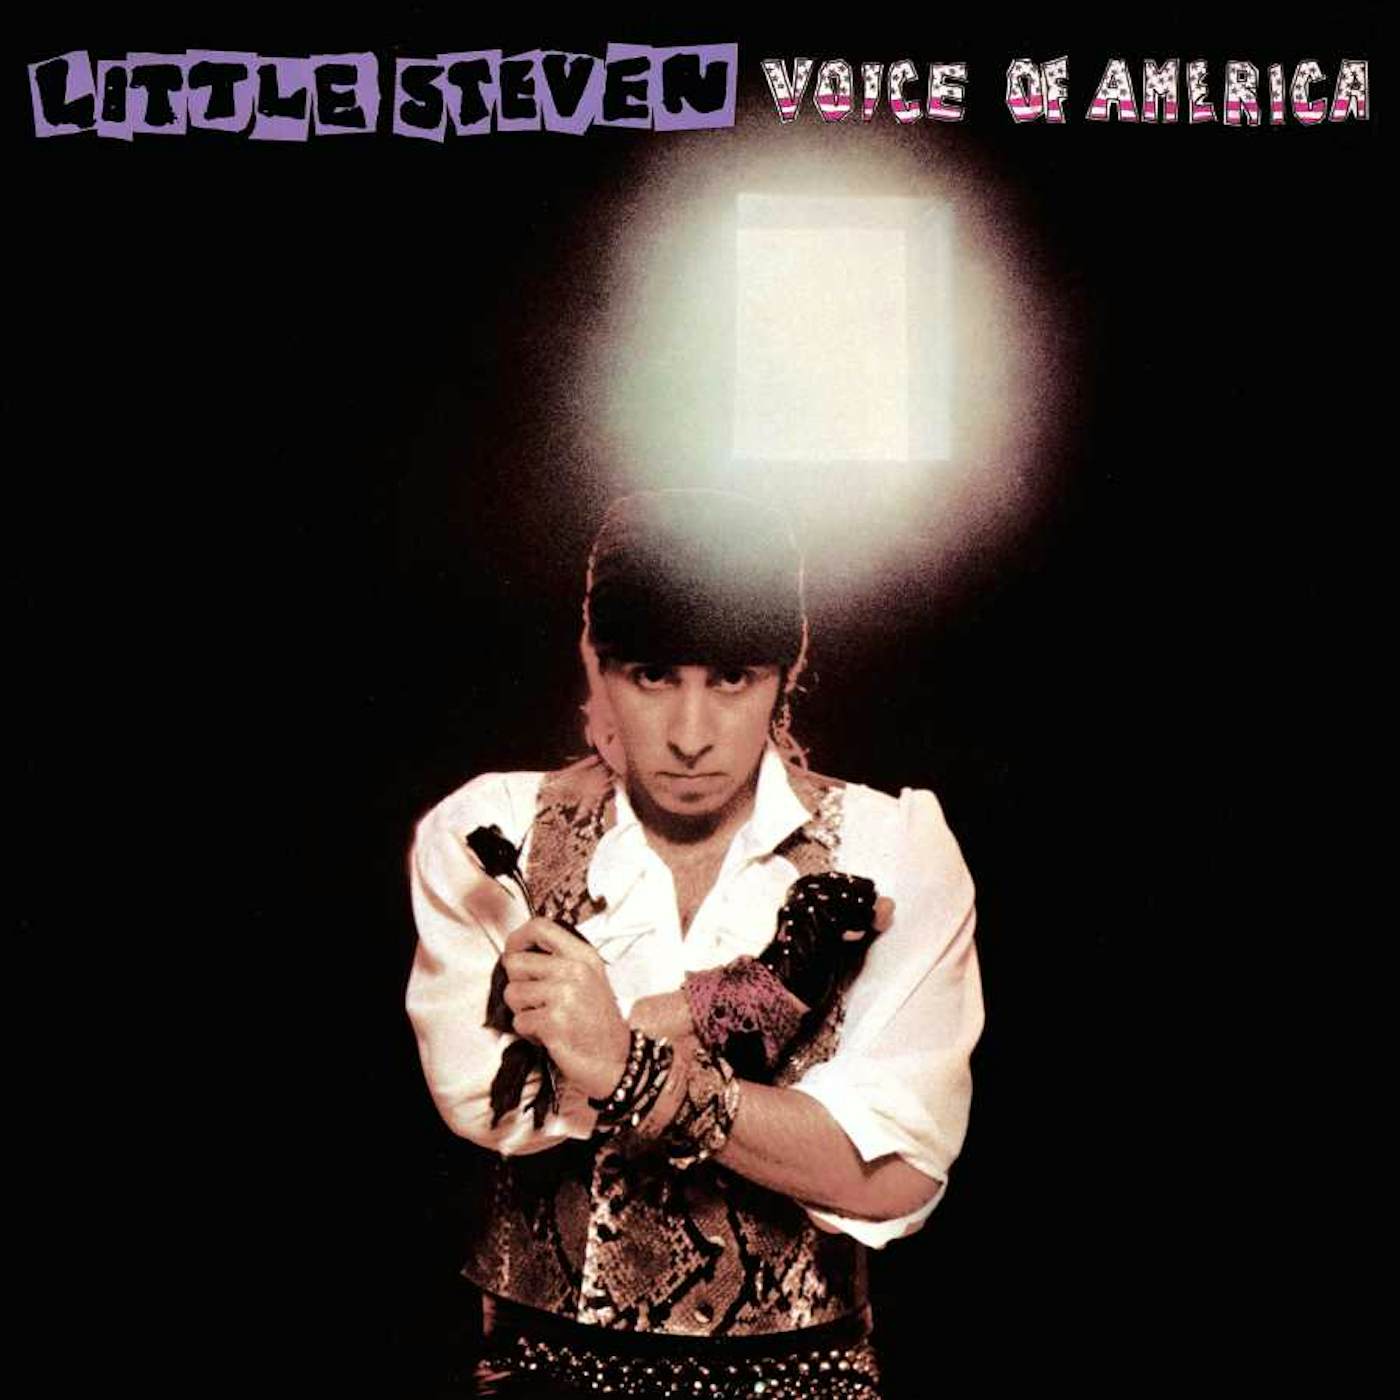 Little Steven Voice Of America Vinyl Record